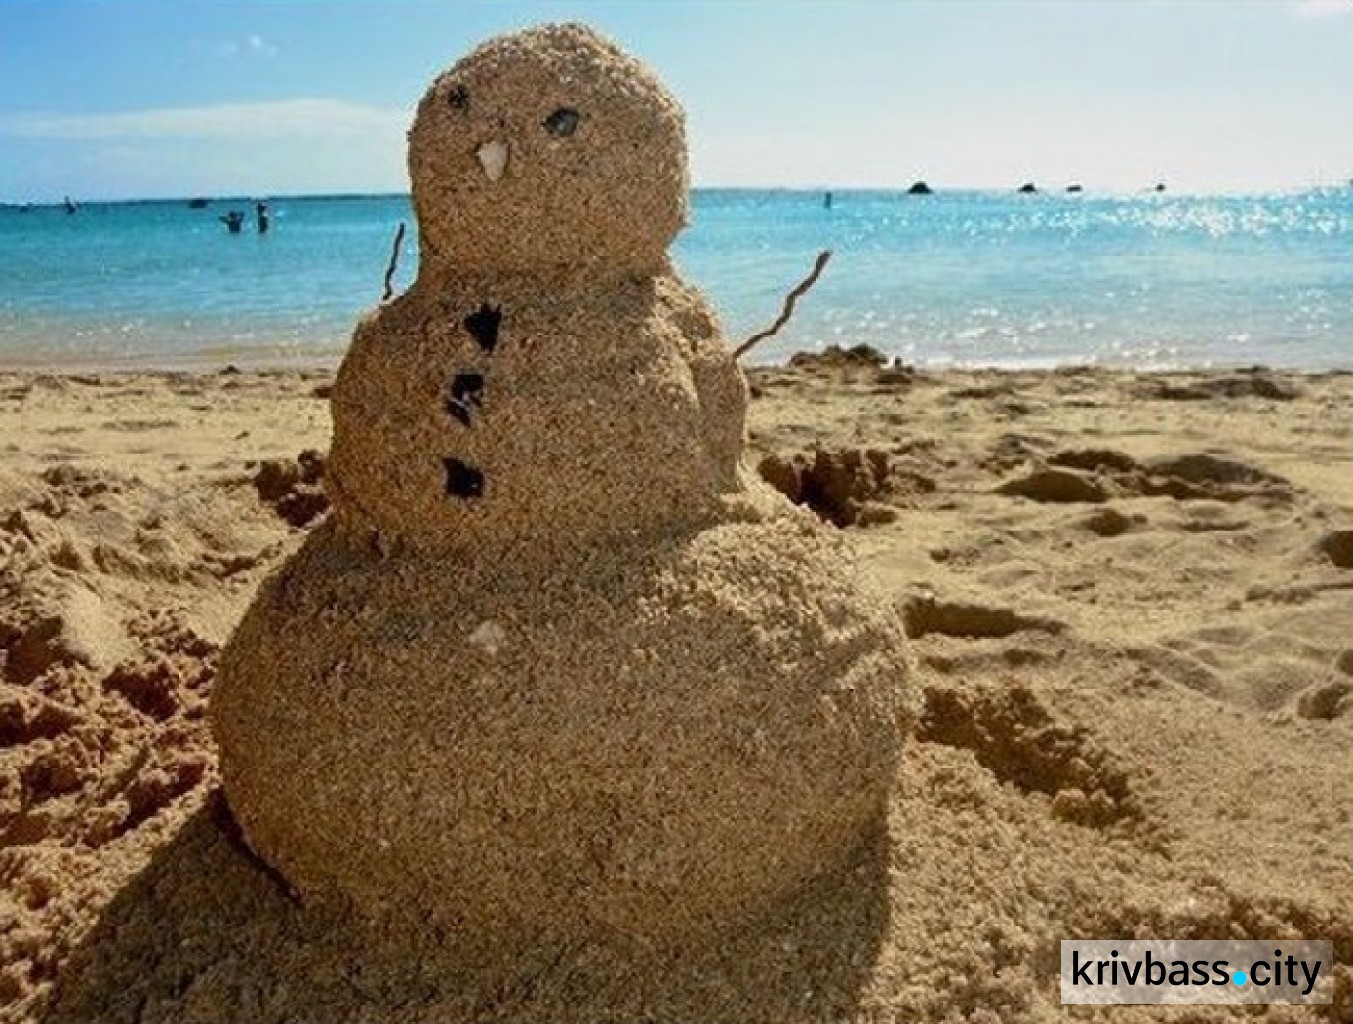 Прикольные картинки на море. Снеговик из песка на пляже. Приколы про море. Приколы на пляже. Смешное на пляже летом.